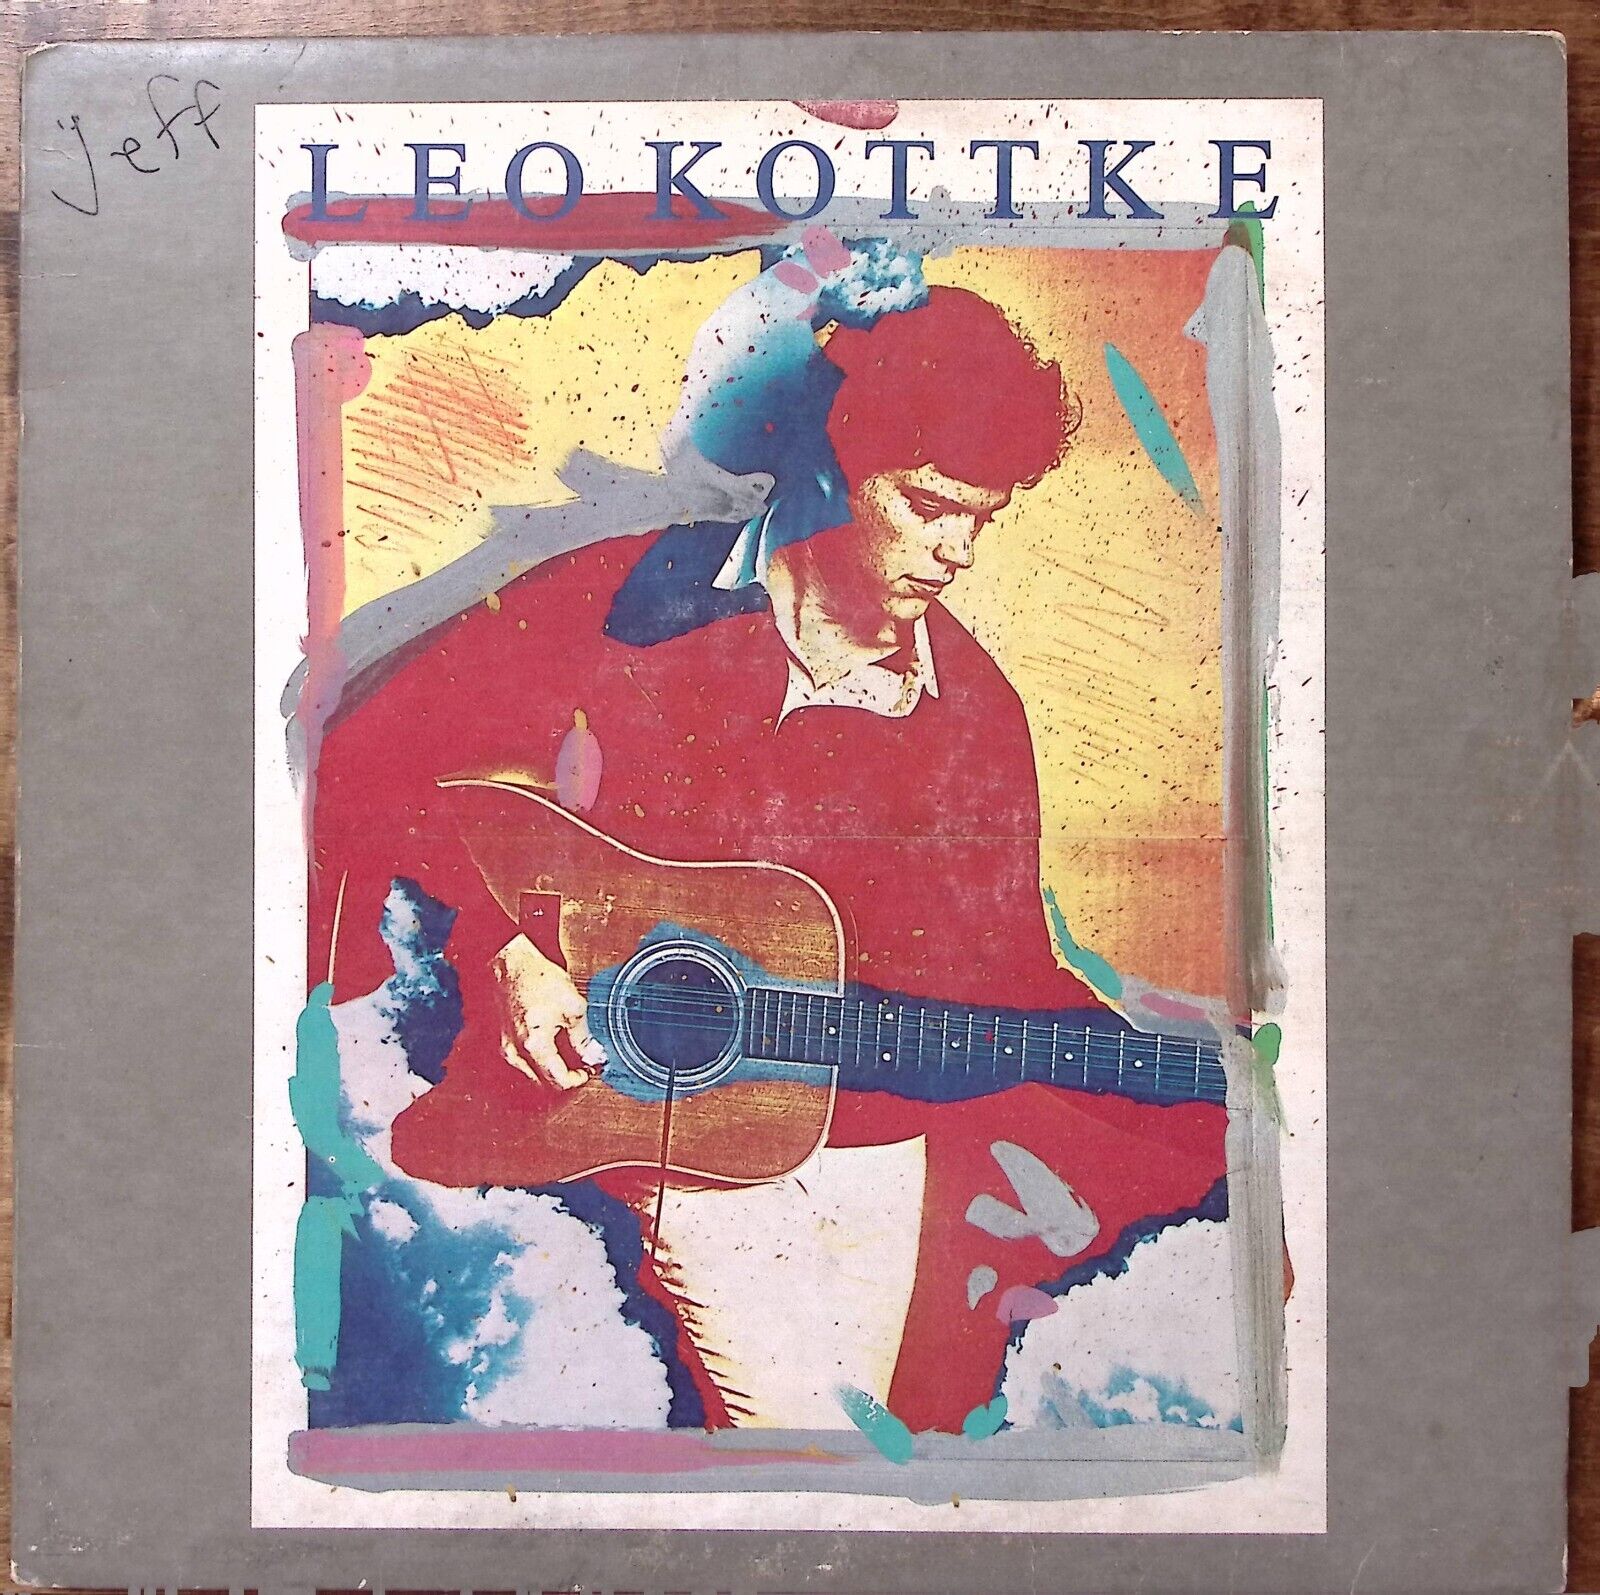 LEO KOTTKE TITLED LEO KOTTKE CHRYSALIS RECORDS VINYL LP 194-64